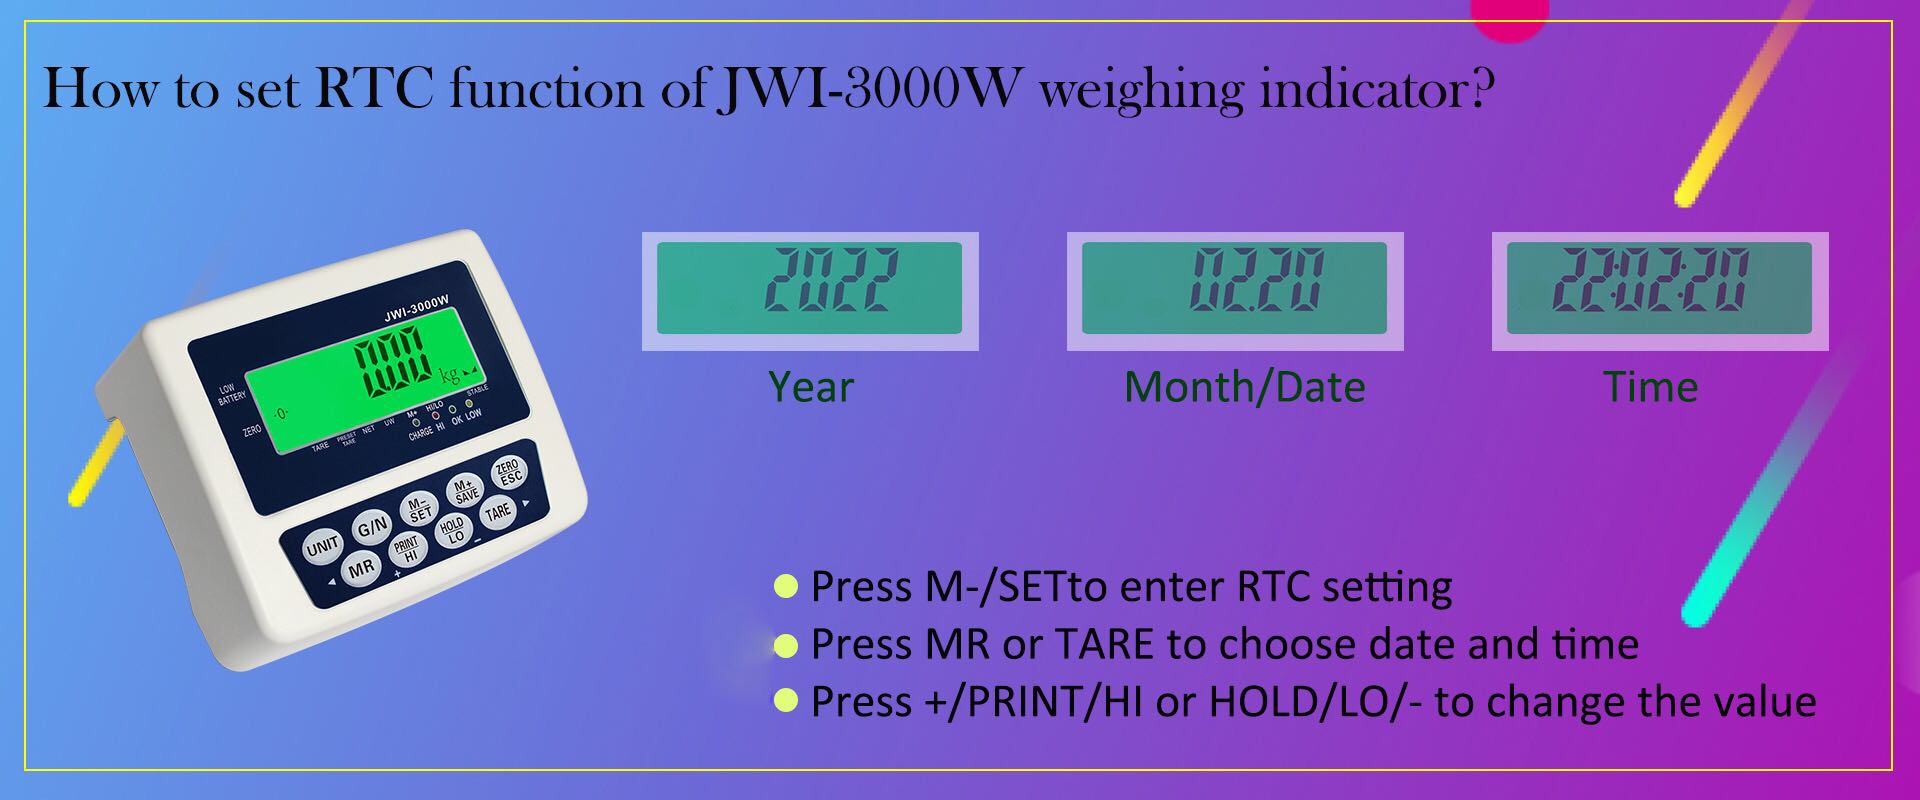 как настроить функцию RTC промышленного весового индикатора JWI-3000W